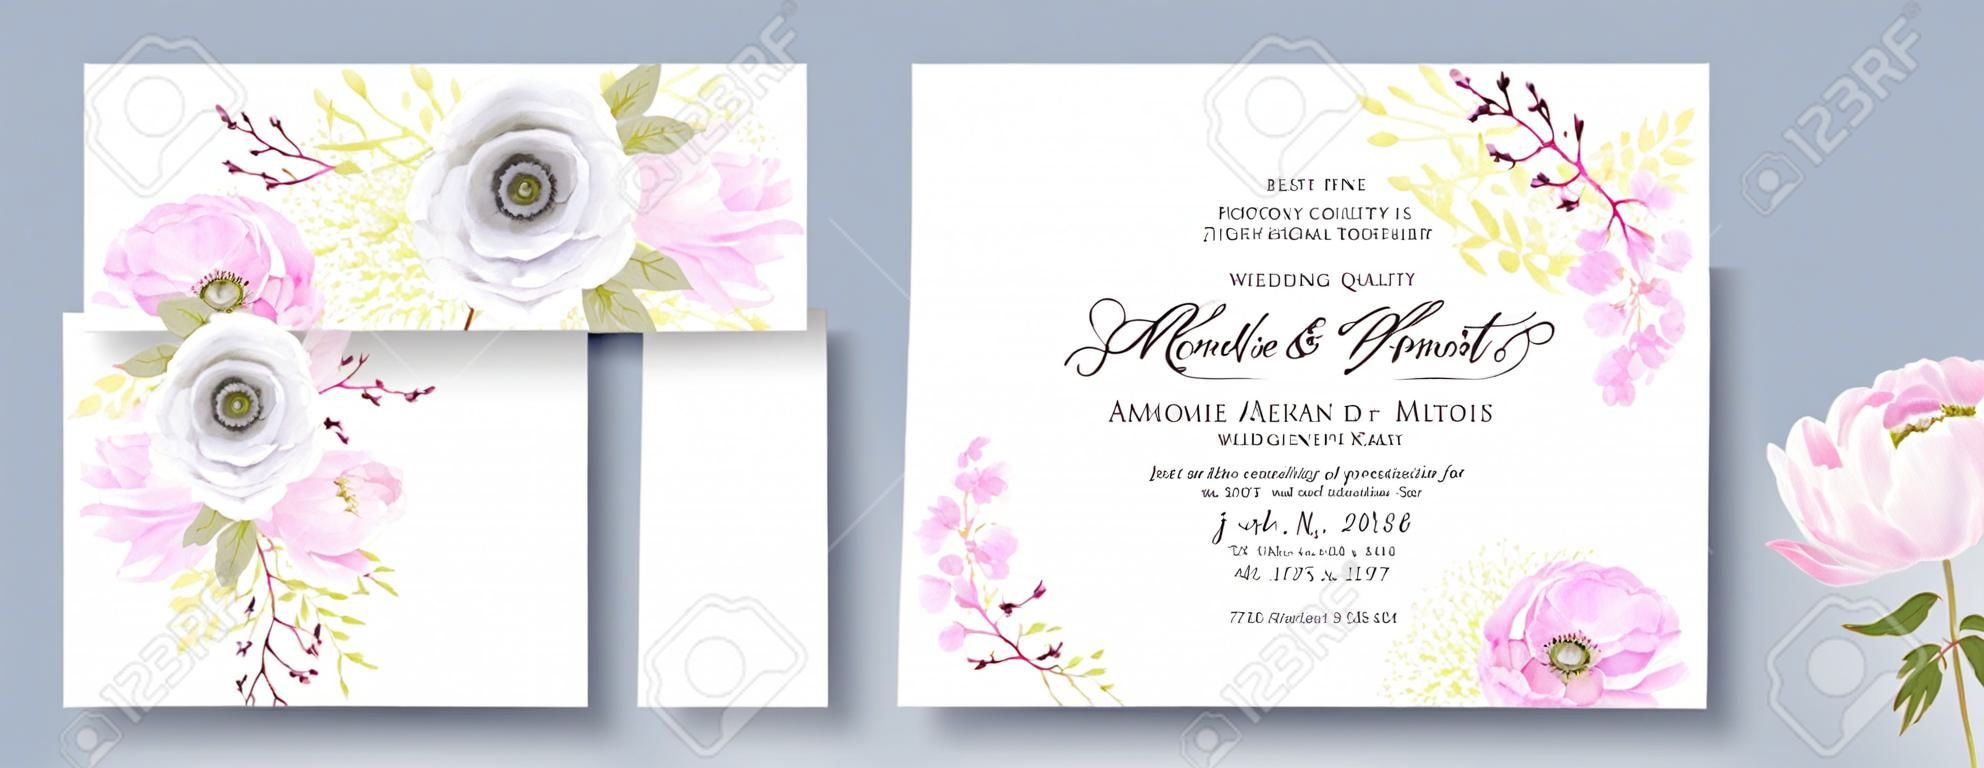 牡丹アネの結婚式の招待セット